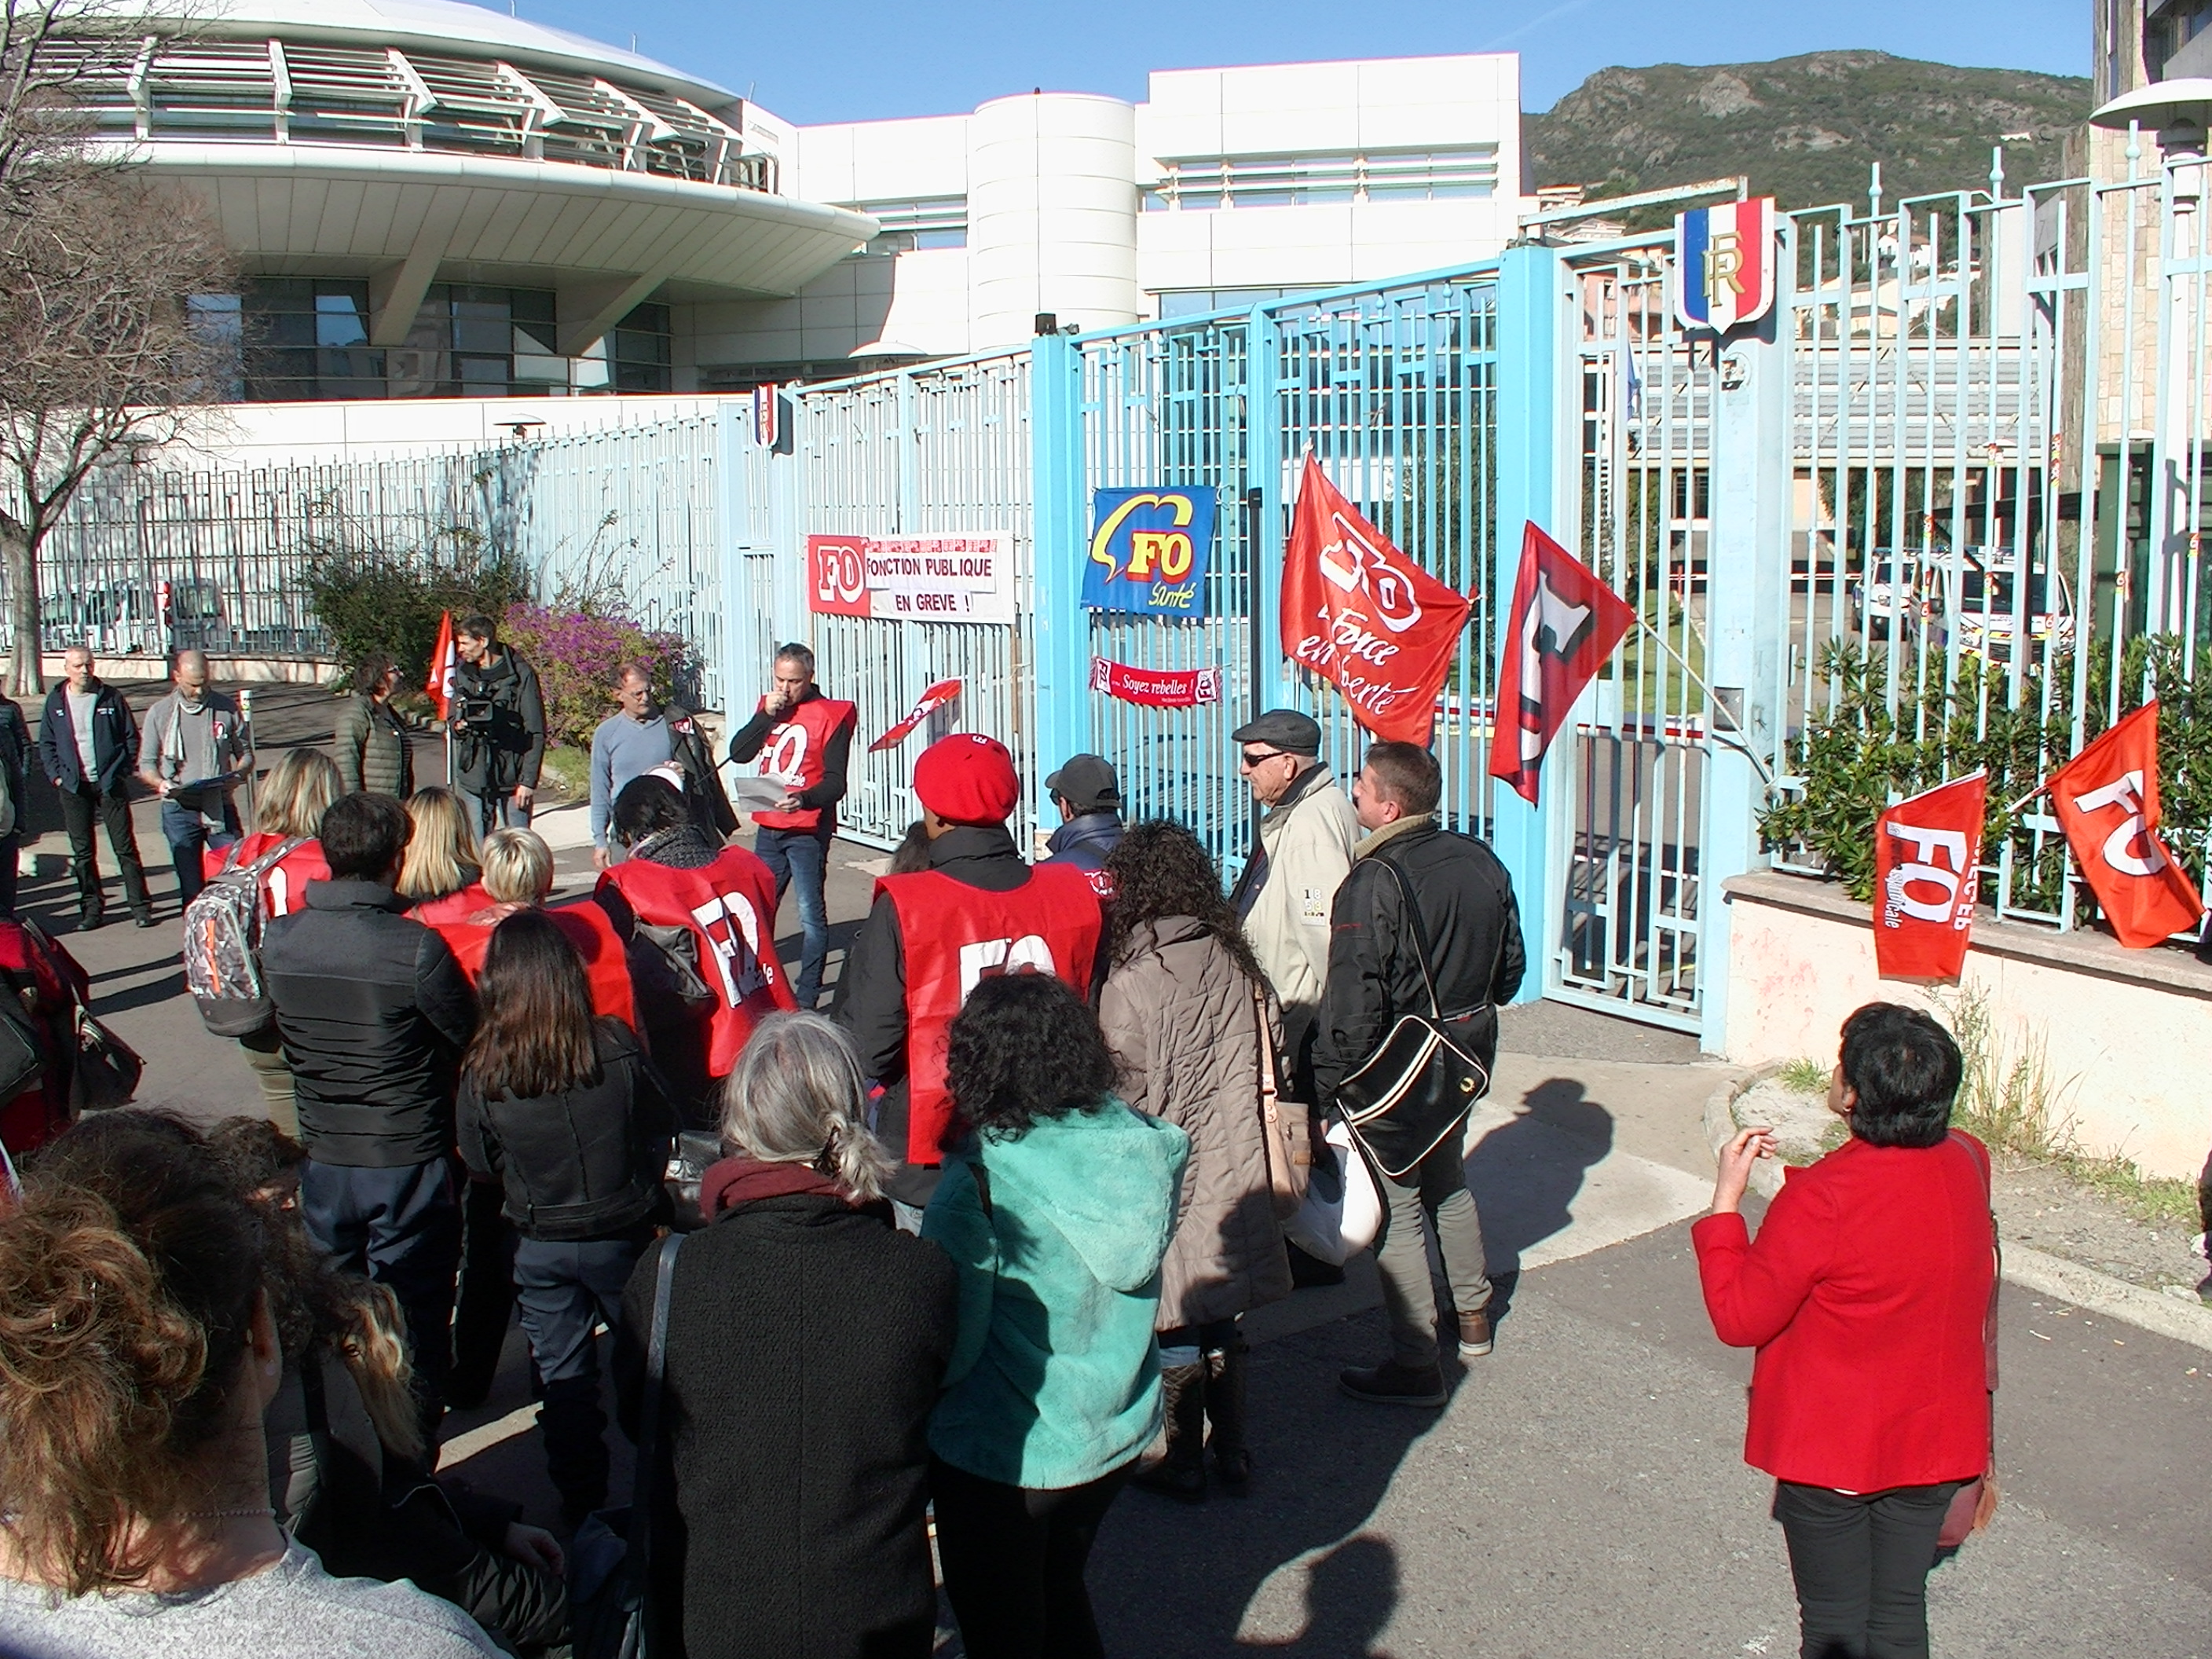 Rassemblement aux flambeaux à Bastia pour les opposants à la réforme des retraites